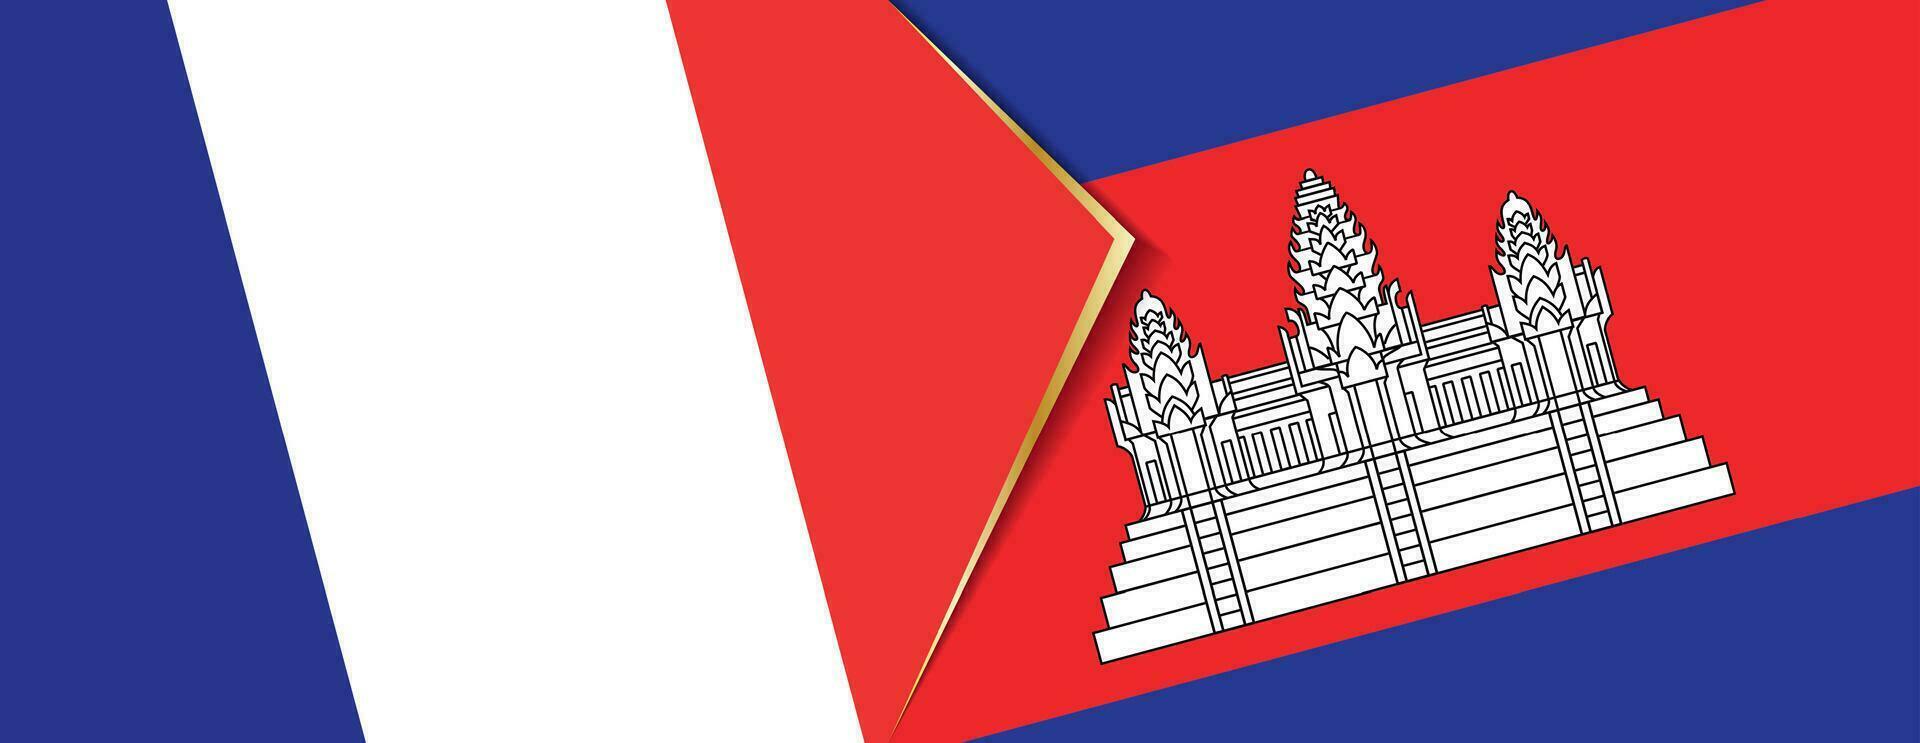 França e Camboja bandeiras, dois vetor bandeiras.